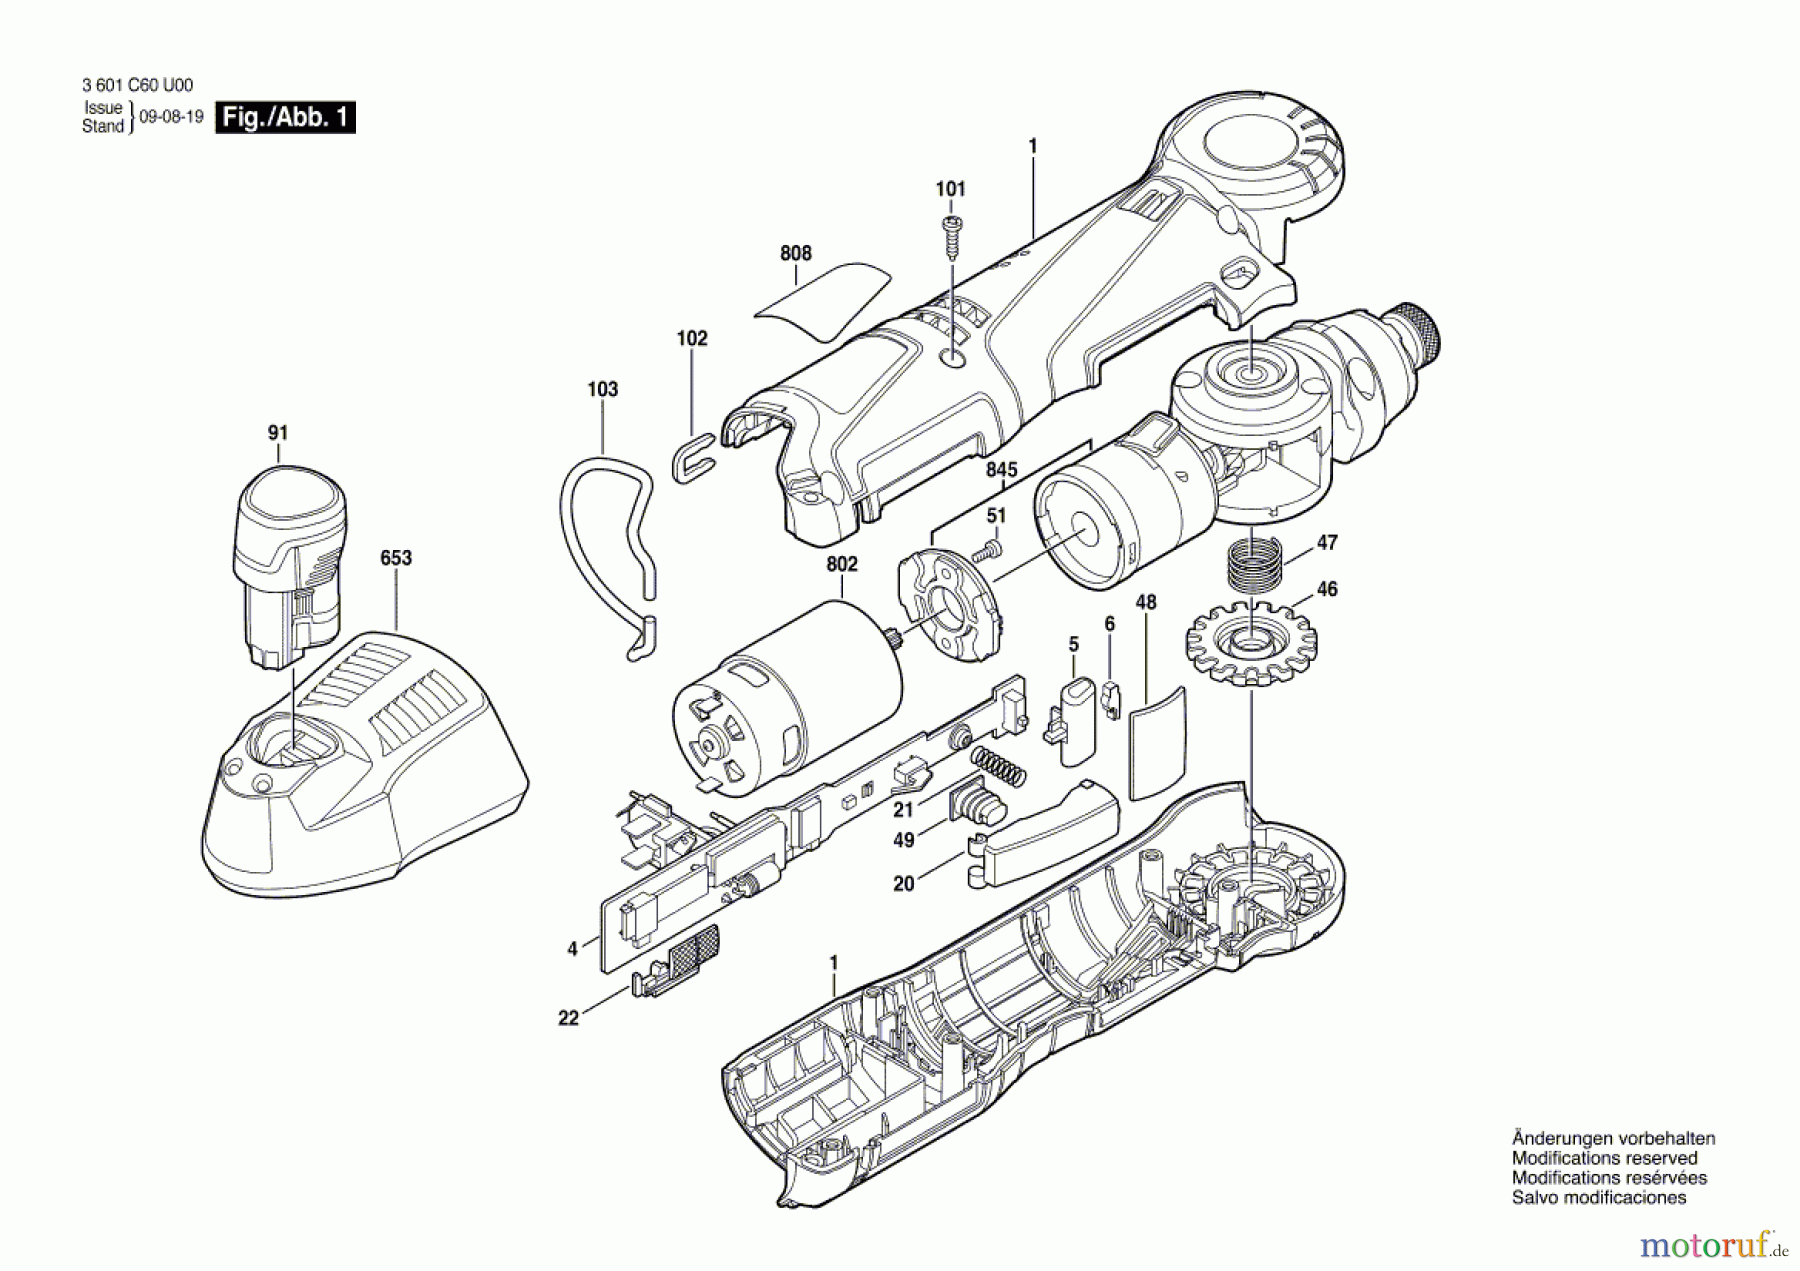  Bosch Werkzeug Winkelschrauber GWI 10,8 V-LI Seite 1